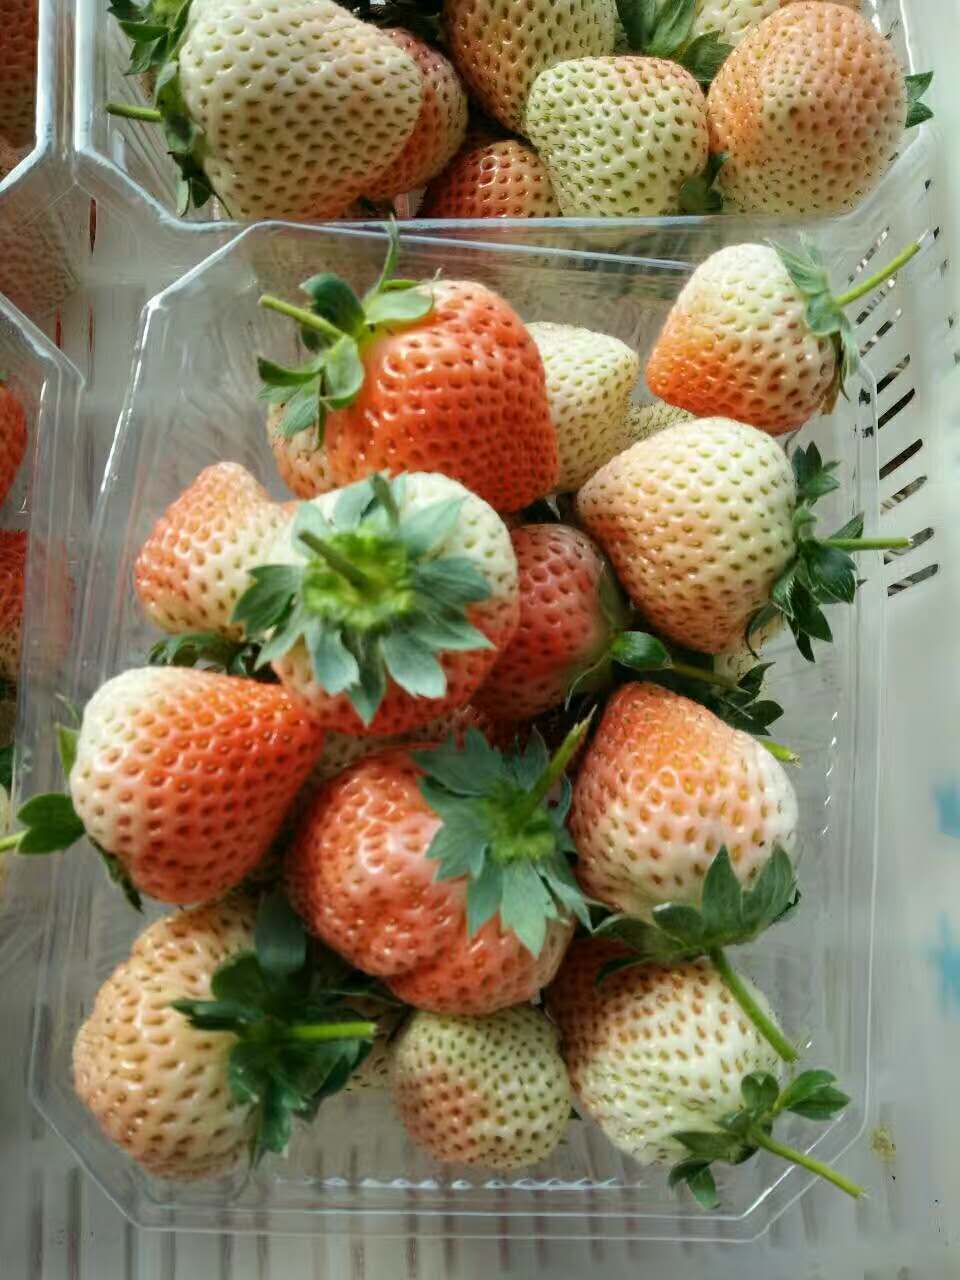 沈阳草莓常见病虫害图谱及防治详解